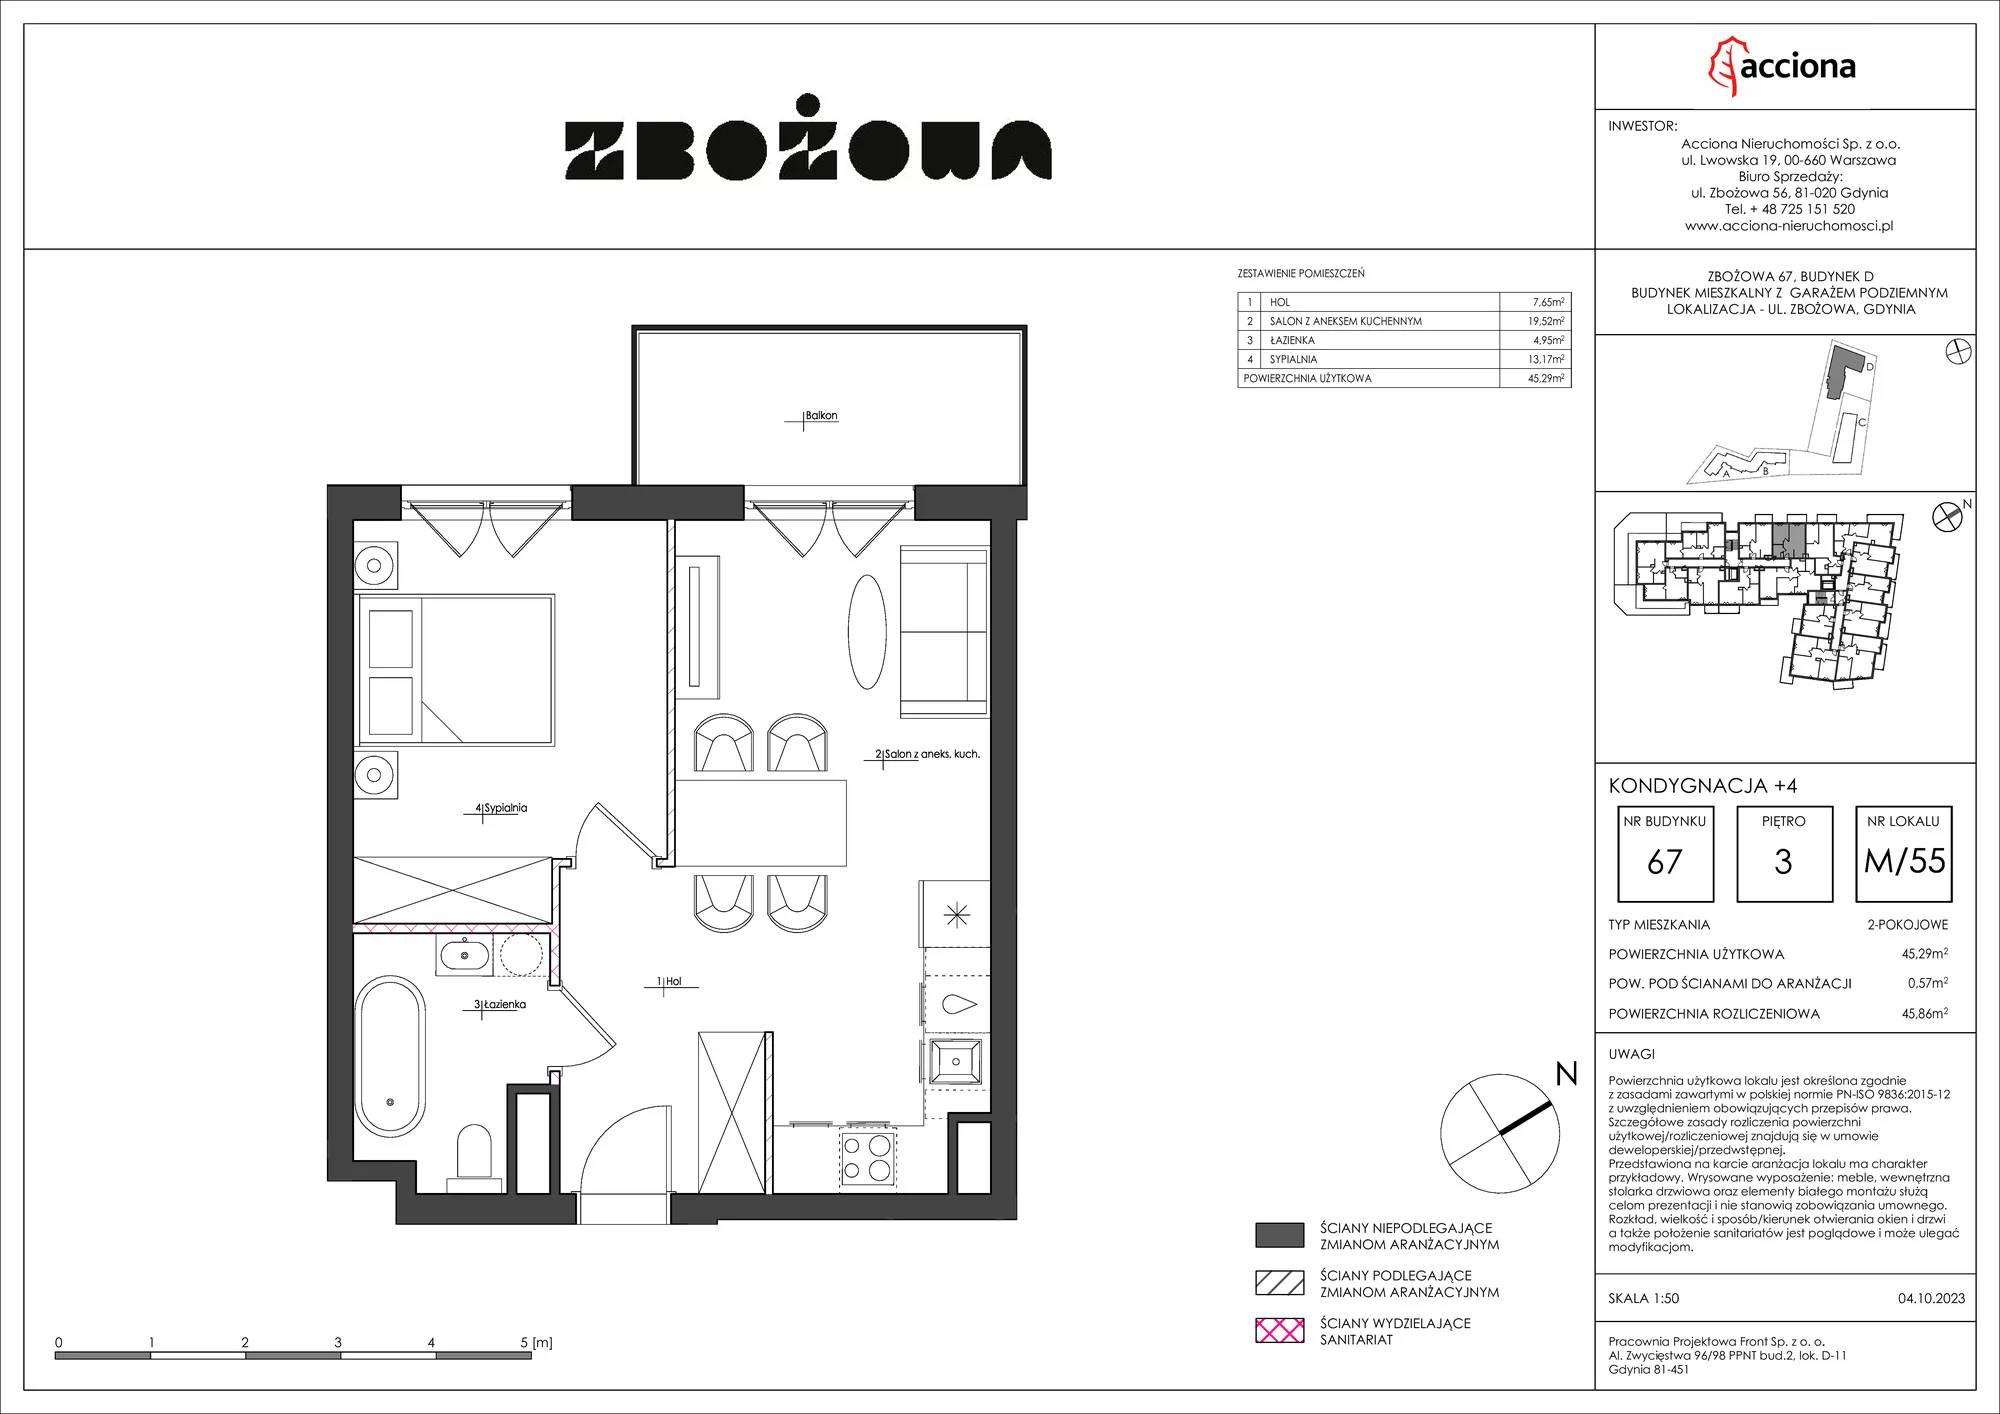 Mieszkanie 45,86 m², piętro 3, oferta nr 67.55, Zbożowa, Gdynia, Cisowa, ul. Zbożowa